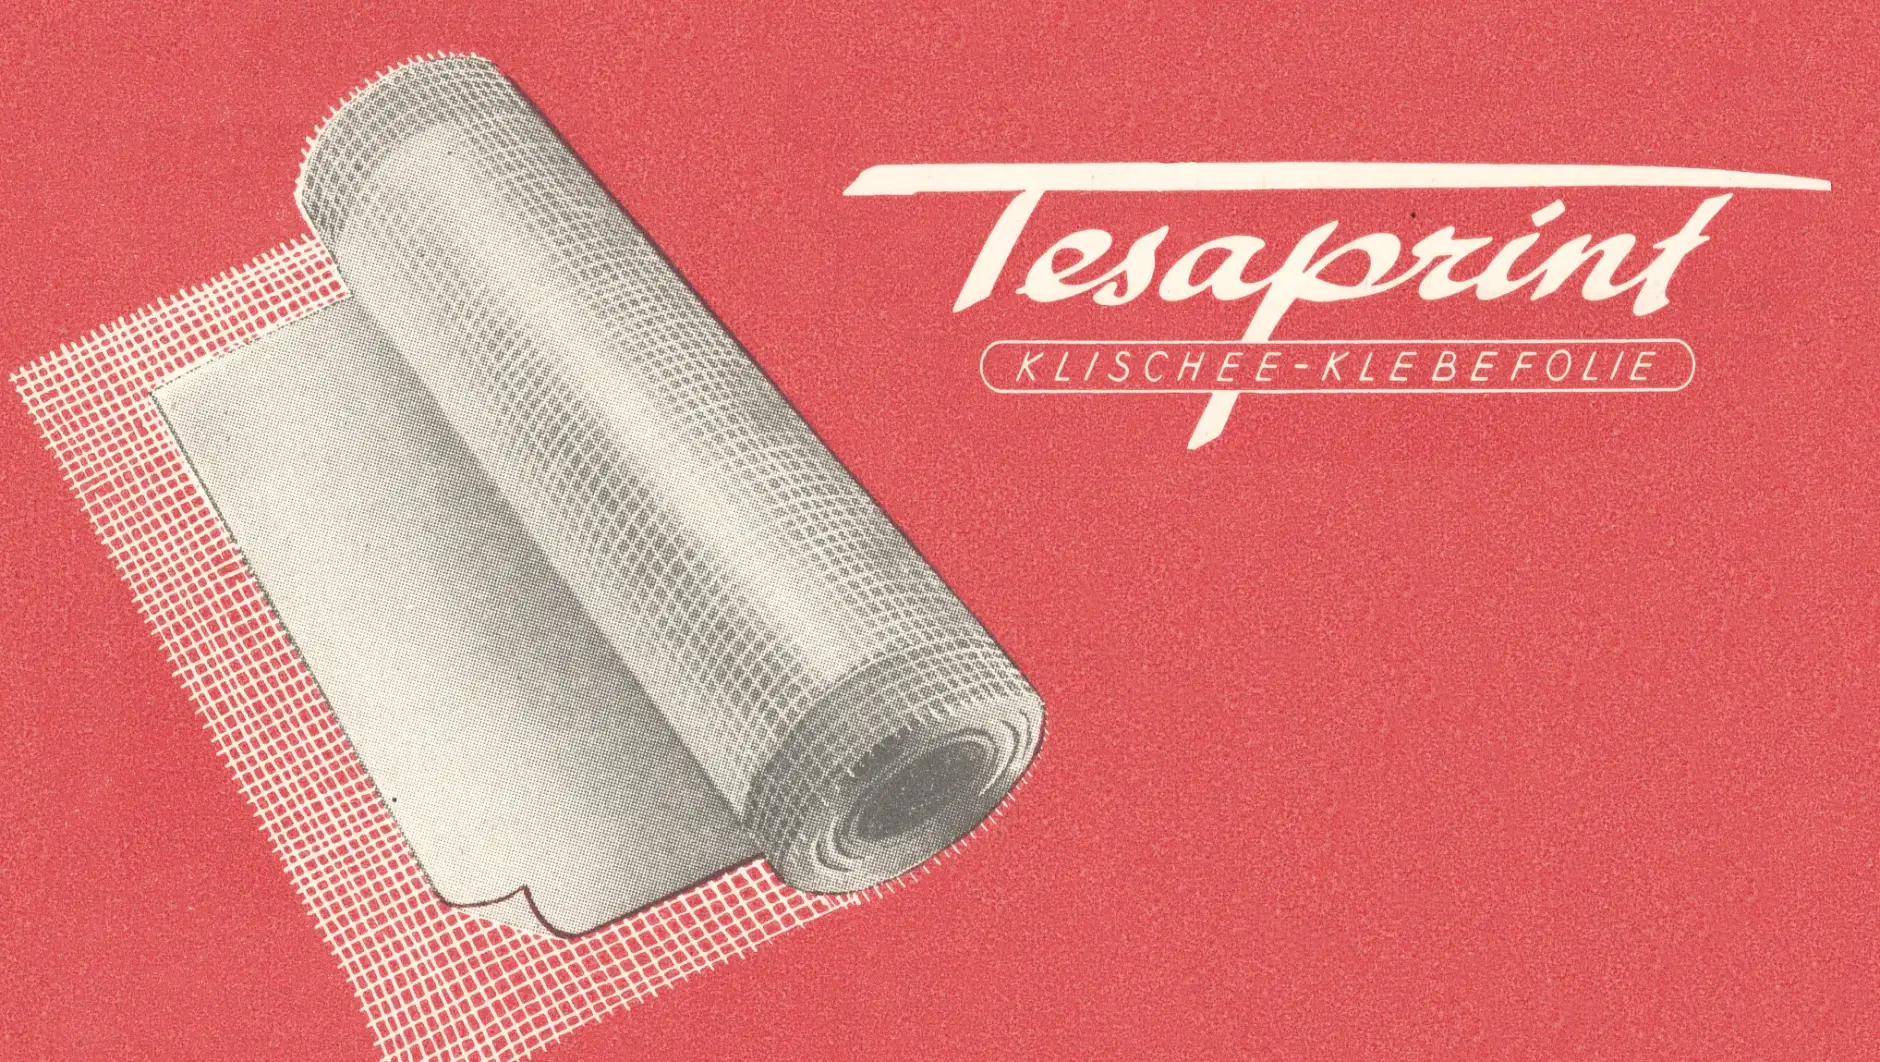 tesaprint era già utilizzato nell'industria della stampa nel 1949.